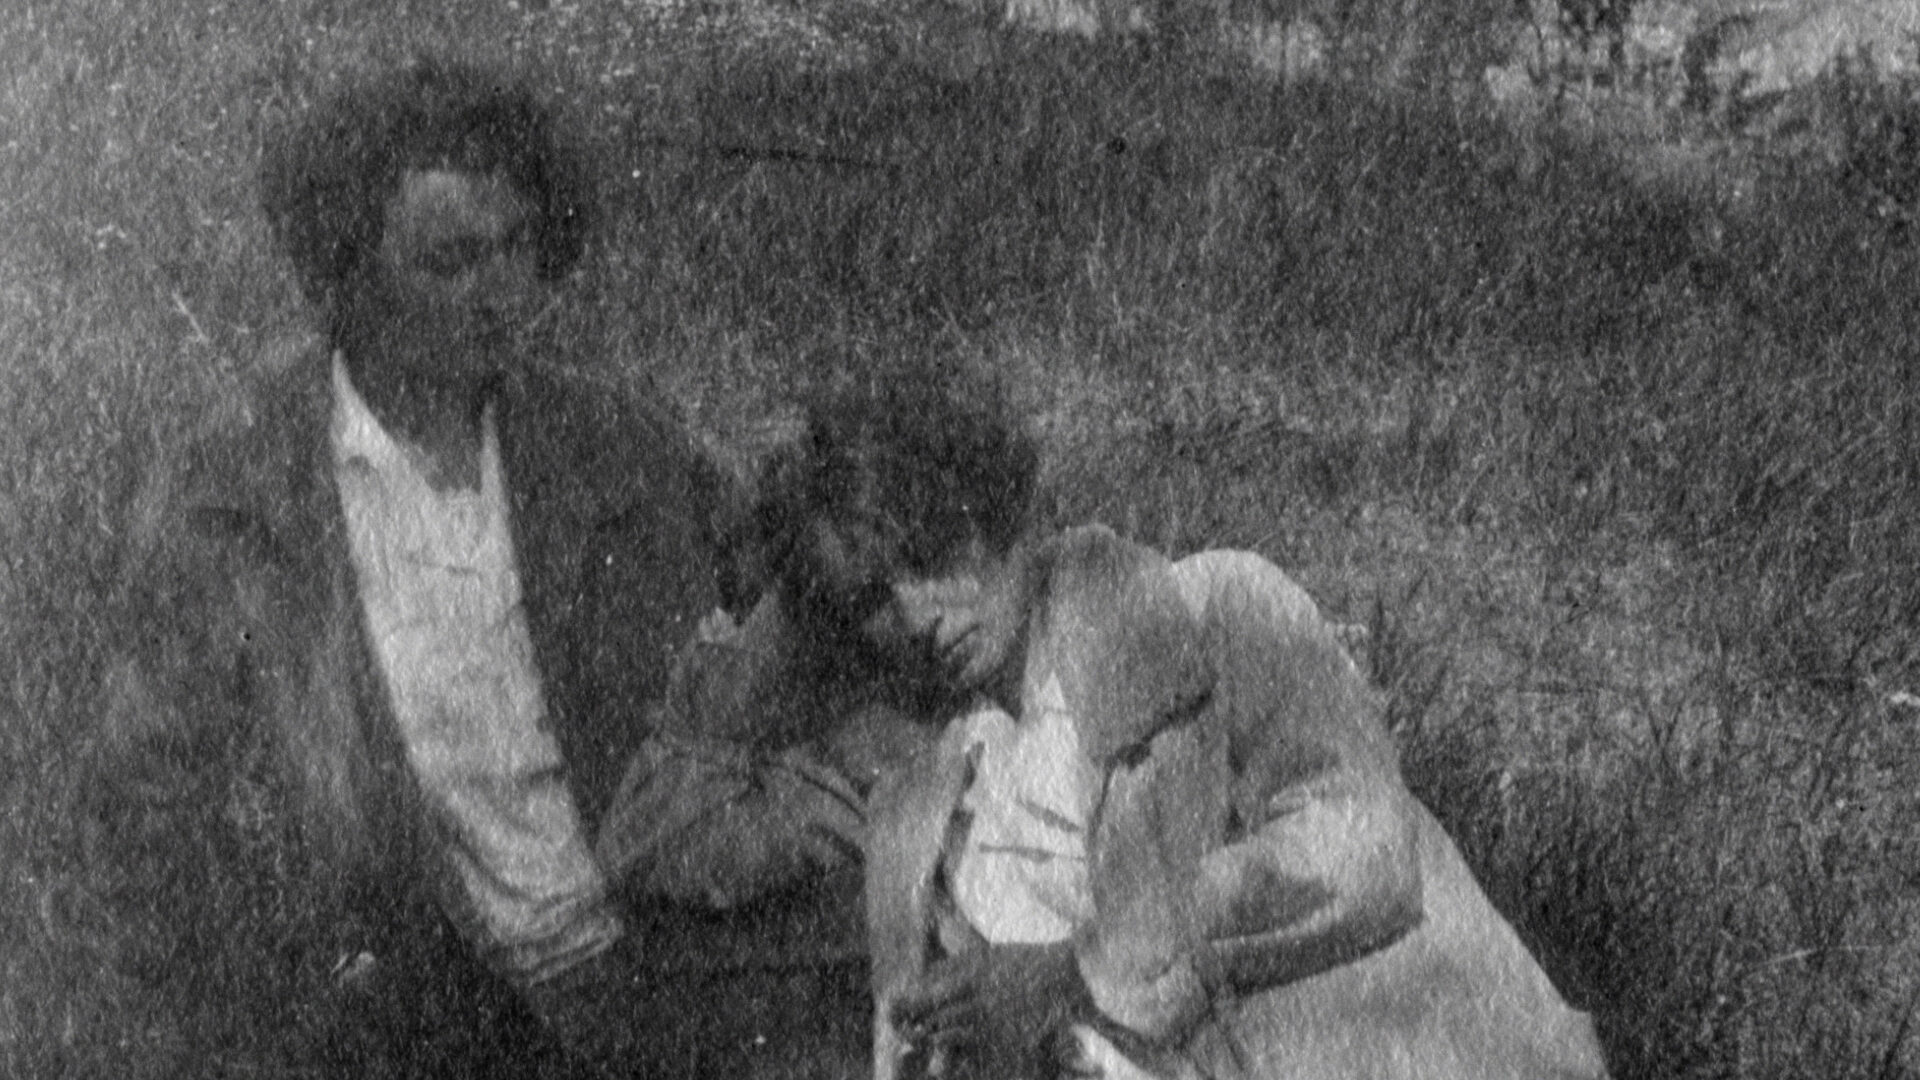 Cena do filme Ultravioleta e a Gangue das Cuspidoras de Sangue, que mostra uma fotografia granulada em preto e branco de duas garotas. Uma permanece sentada e a outra se escora no corpo da outra menina, apoiando a cabeça com as mão direita.